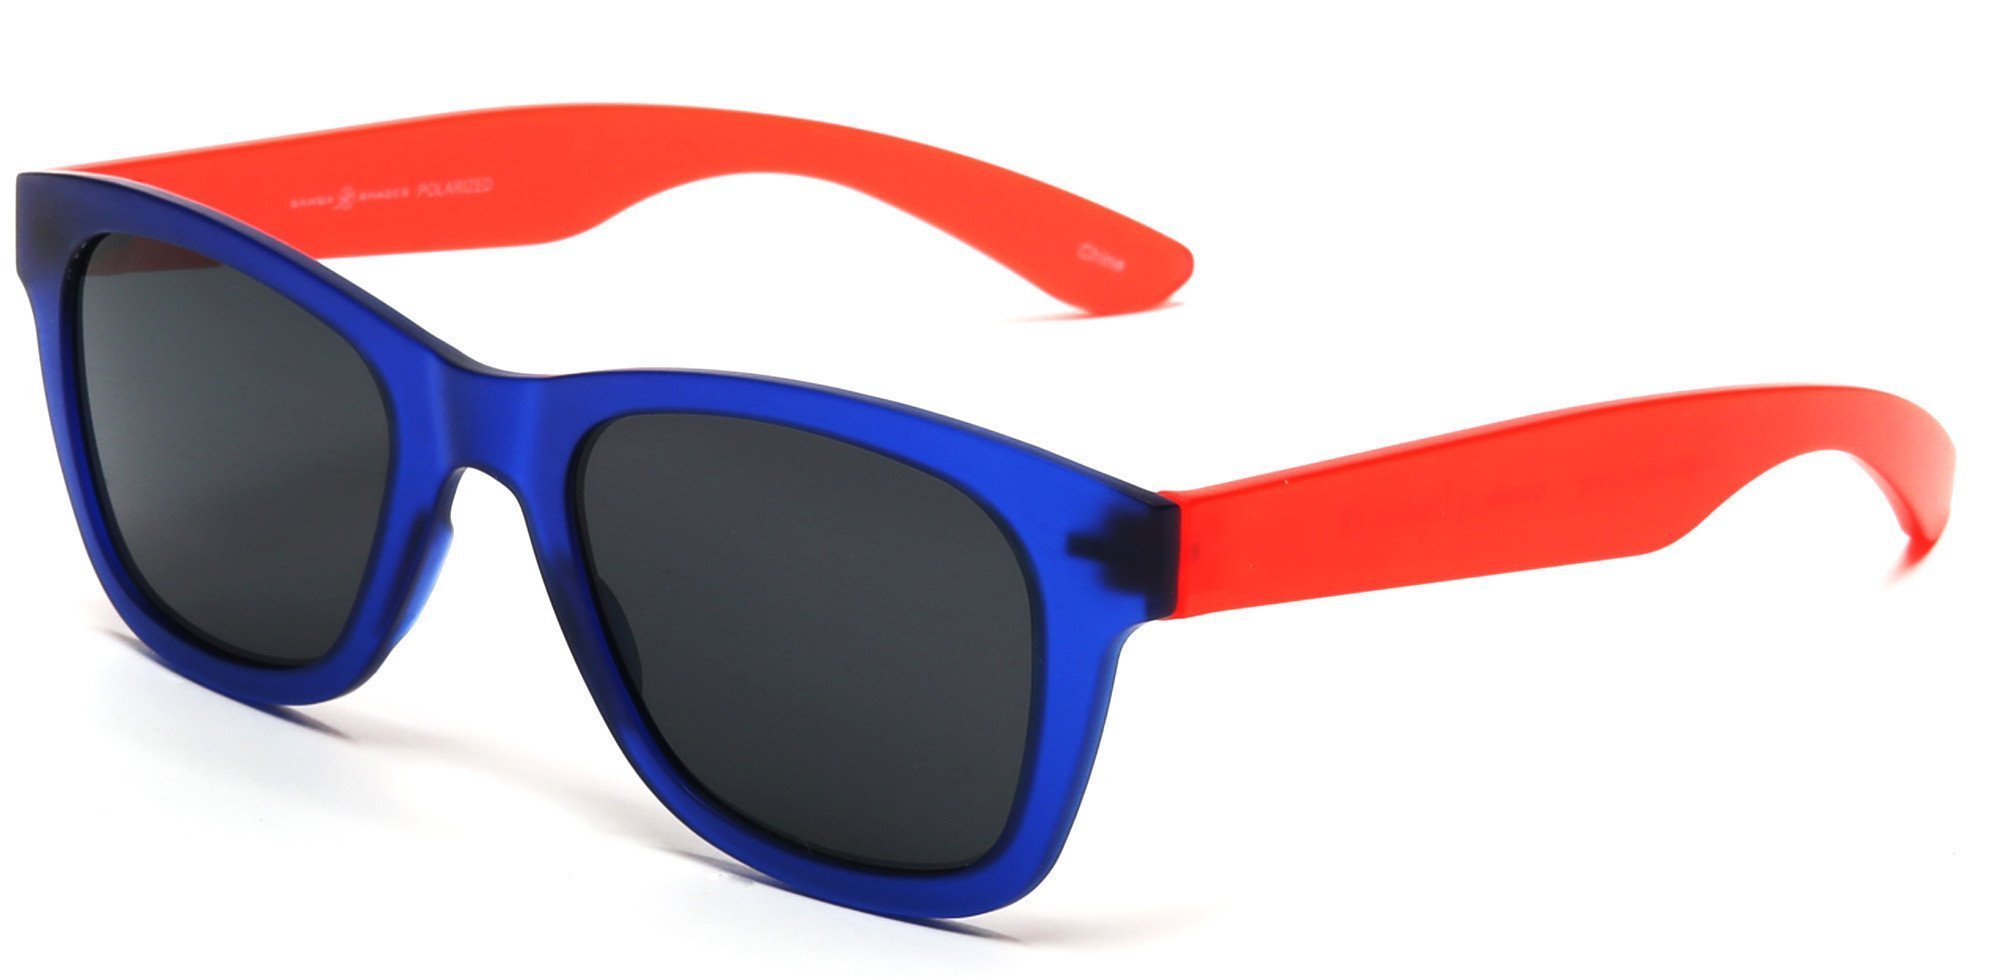 Valencia Polarized Horn Rimmed Sunglasses TR90 Unbreakable Construction Blue-Samba Shades